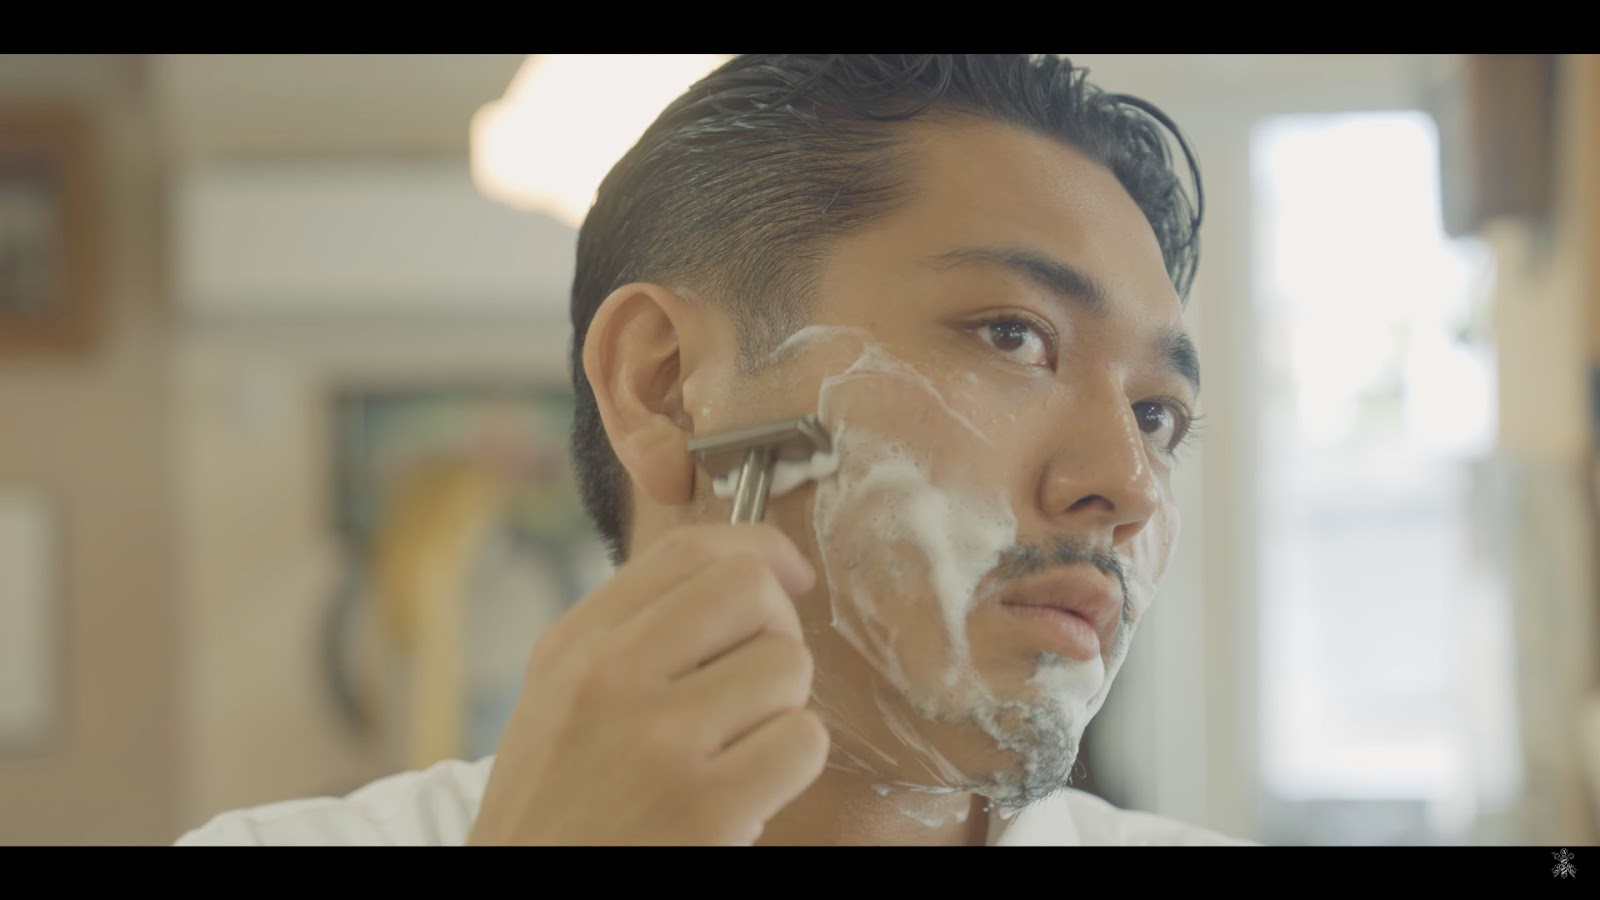 髭剃りに悩む全男性におすすめ「ヘンソンシェービング」使い心地や特徴を既に使っている理容師が解説